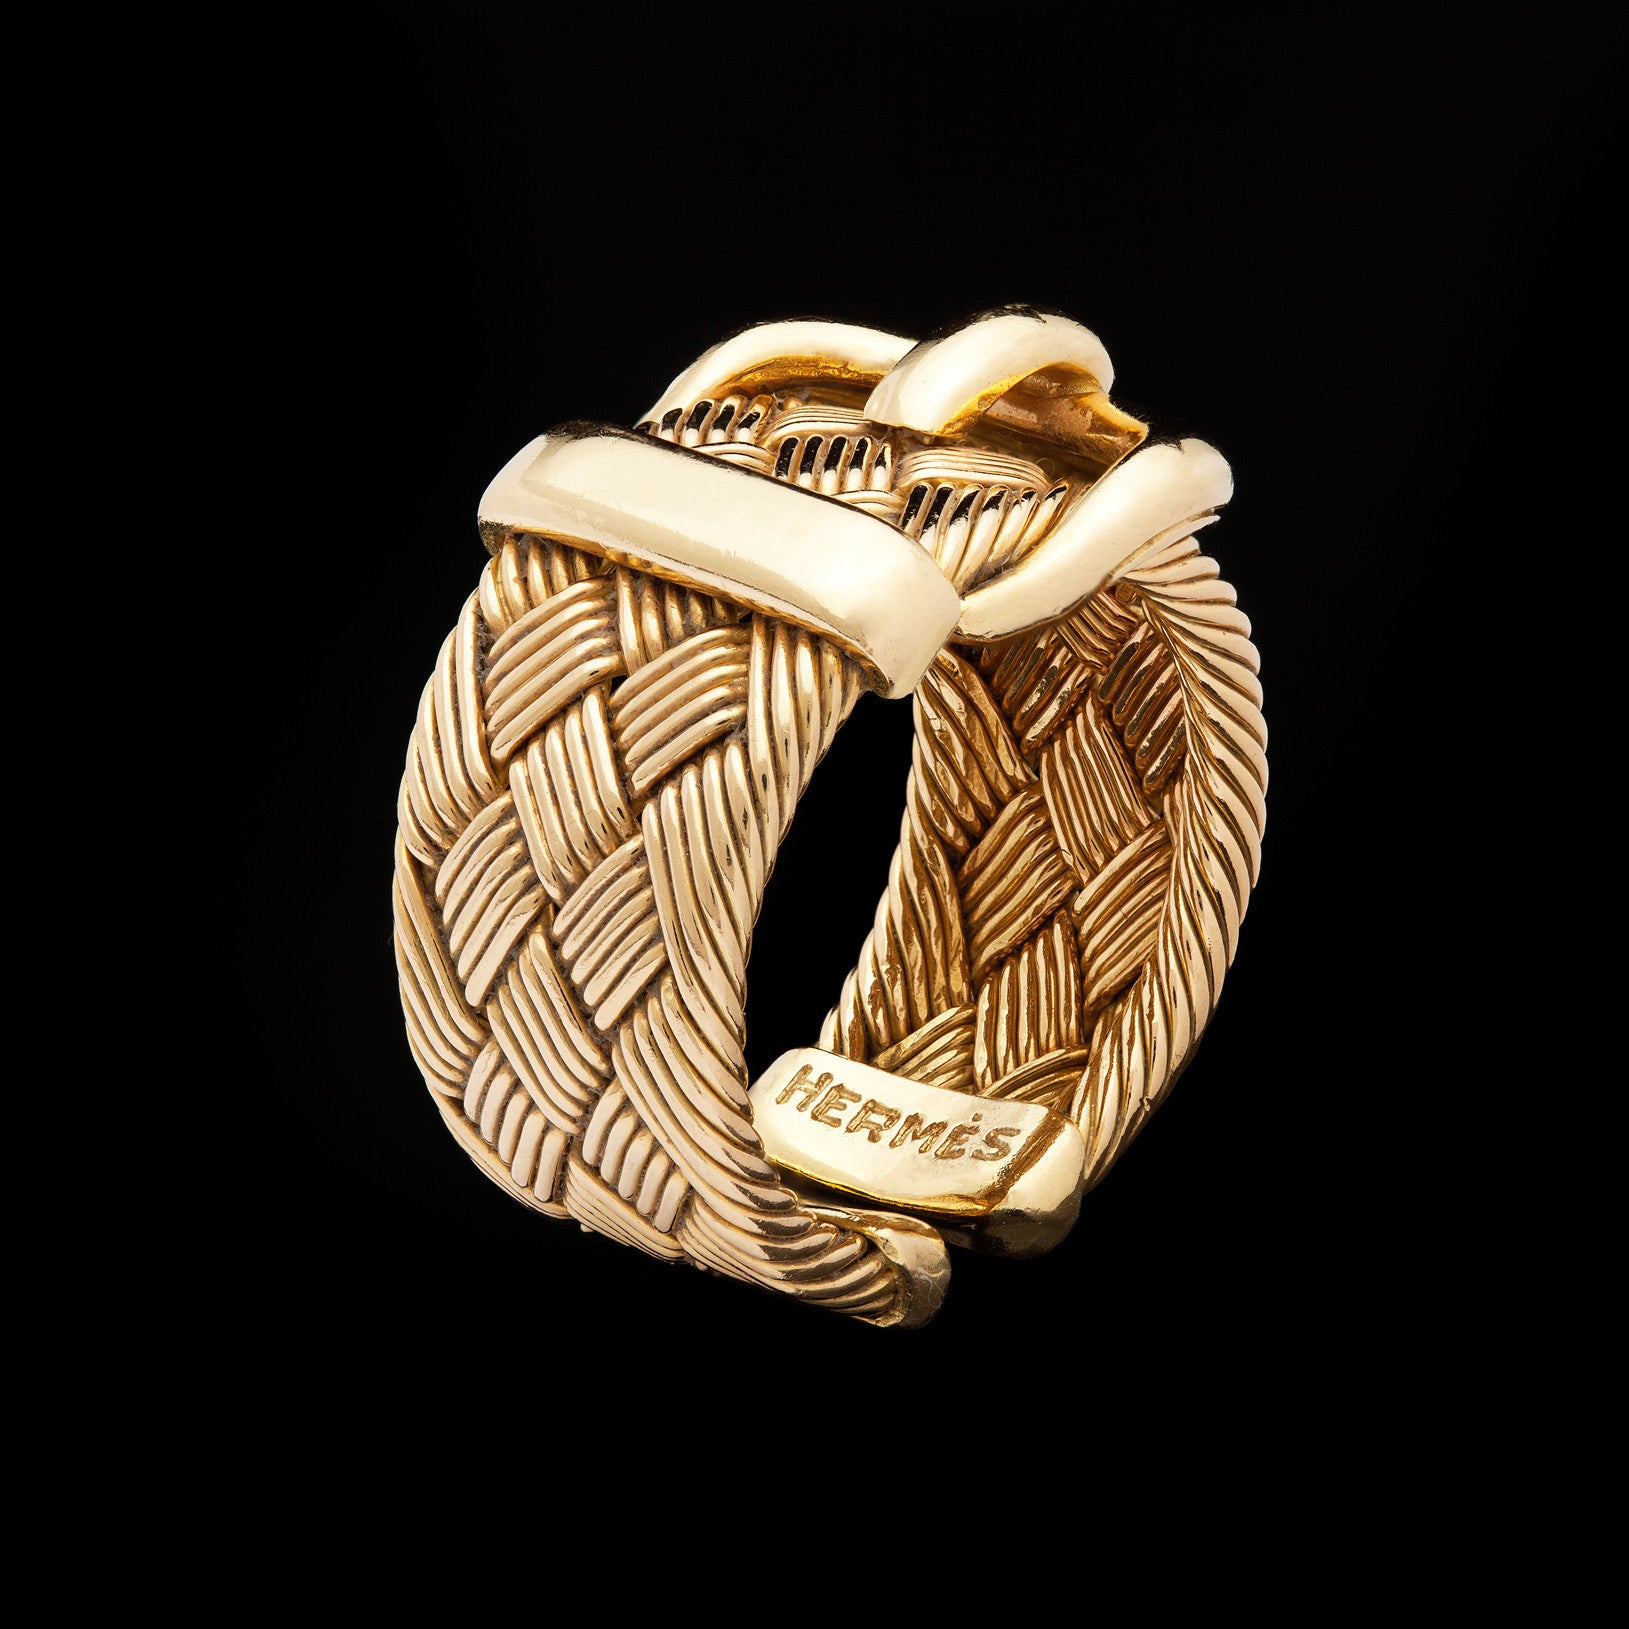 Hermes Buckle Belt Motif Gold Tone Metal Ring Size 54 Hermes